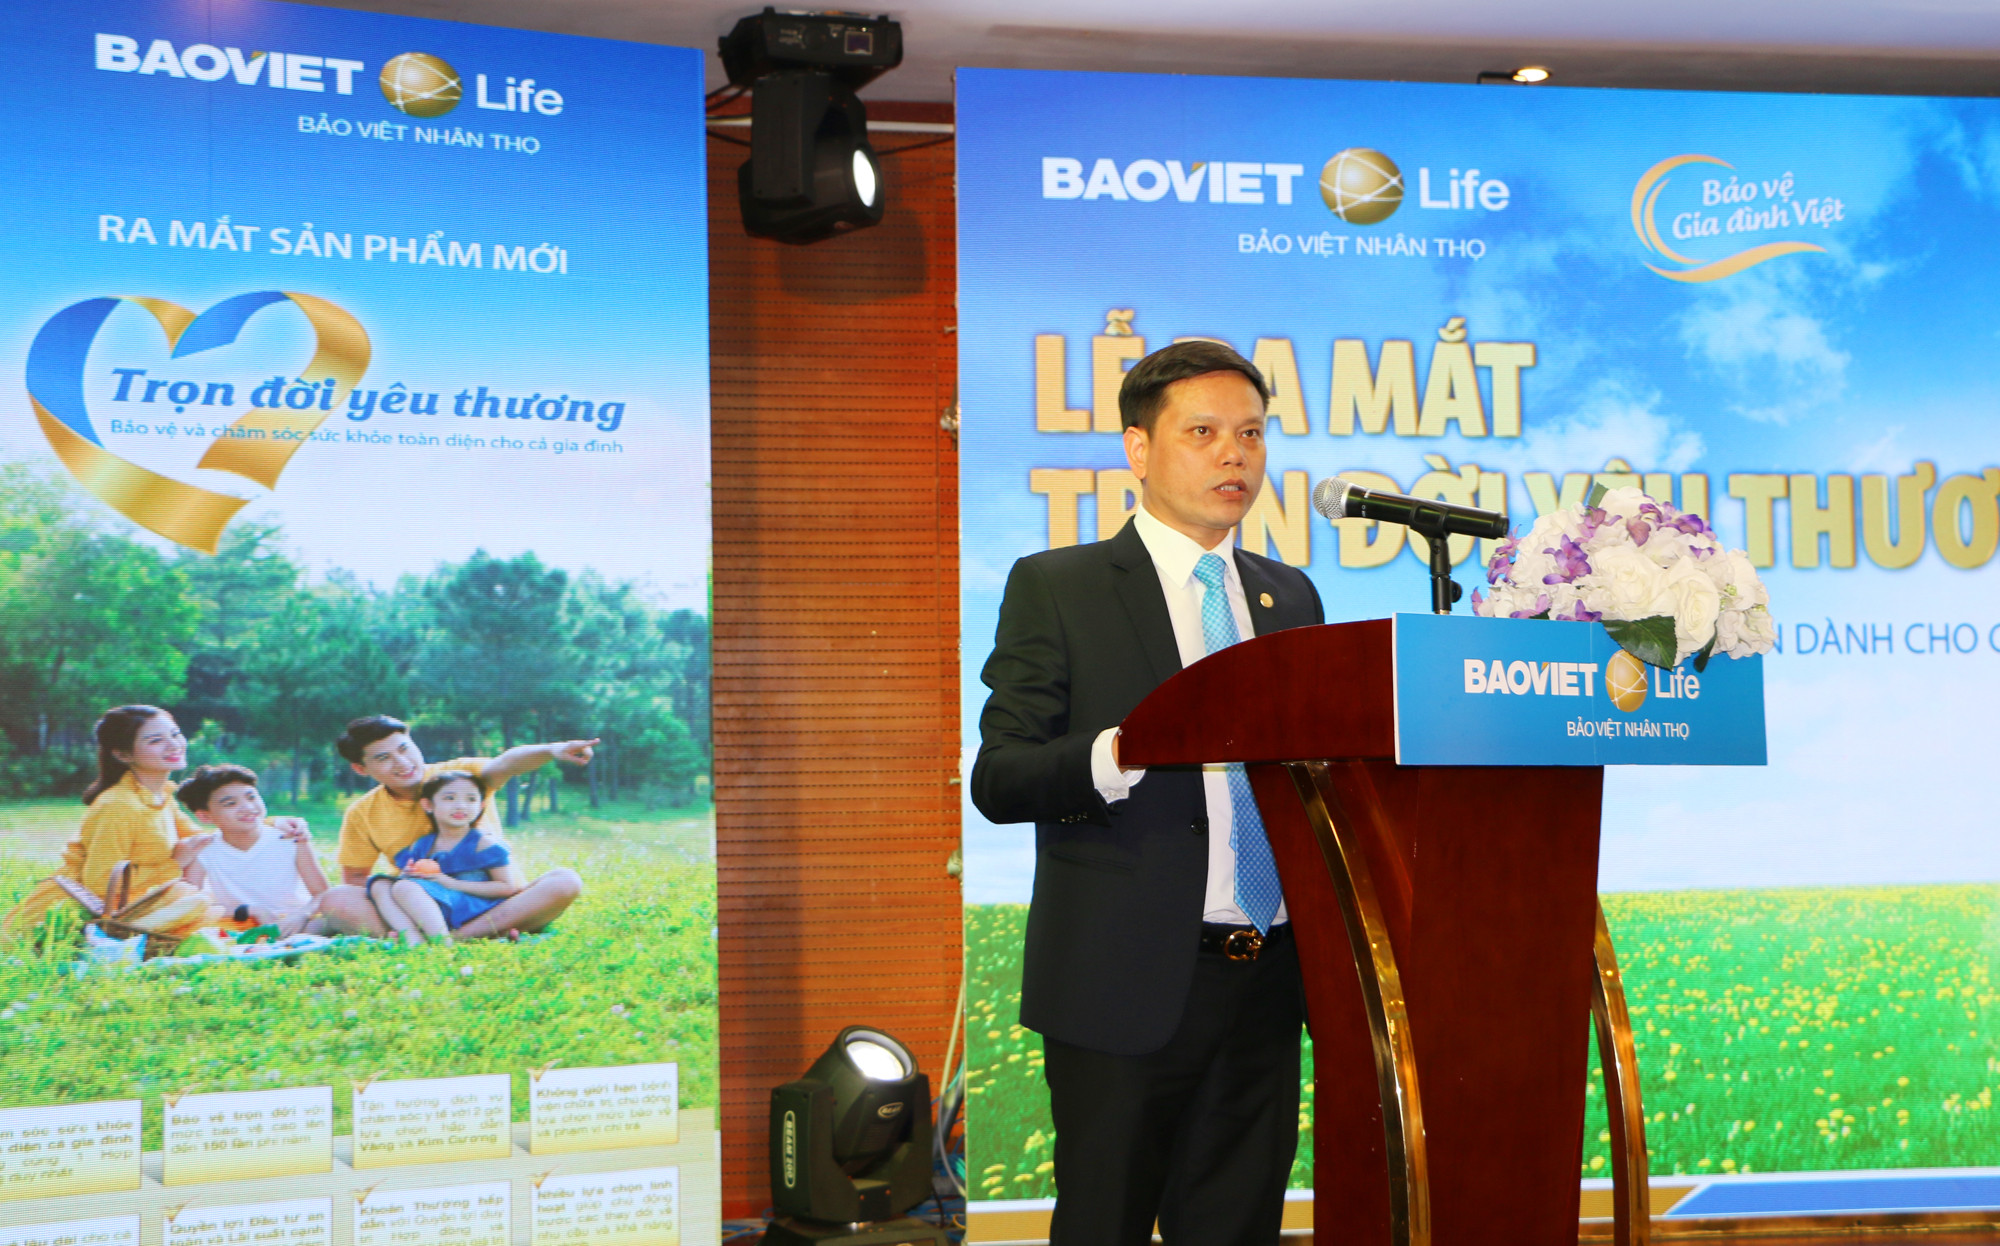 Ông Hoàng Công Sáng - Giám đốc Công ty Bảo Việt Nhân thọ Bắc Nghệ An phát biểu ra mắt sản phẩm dịch vụ mới 